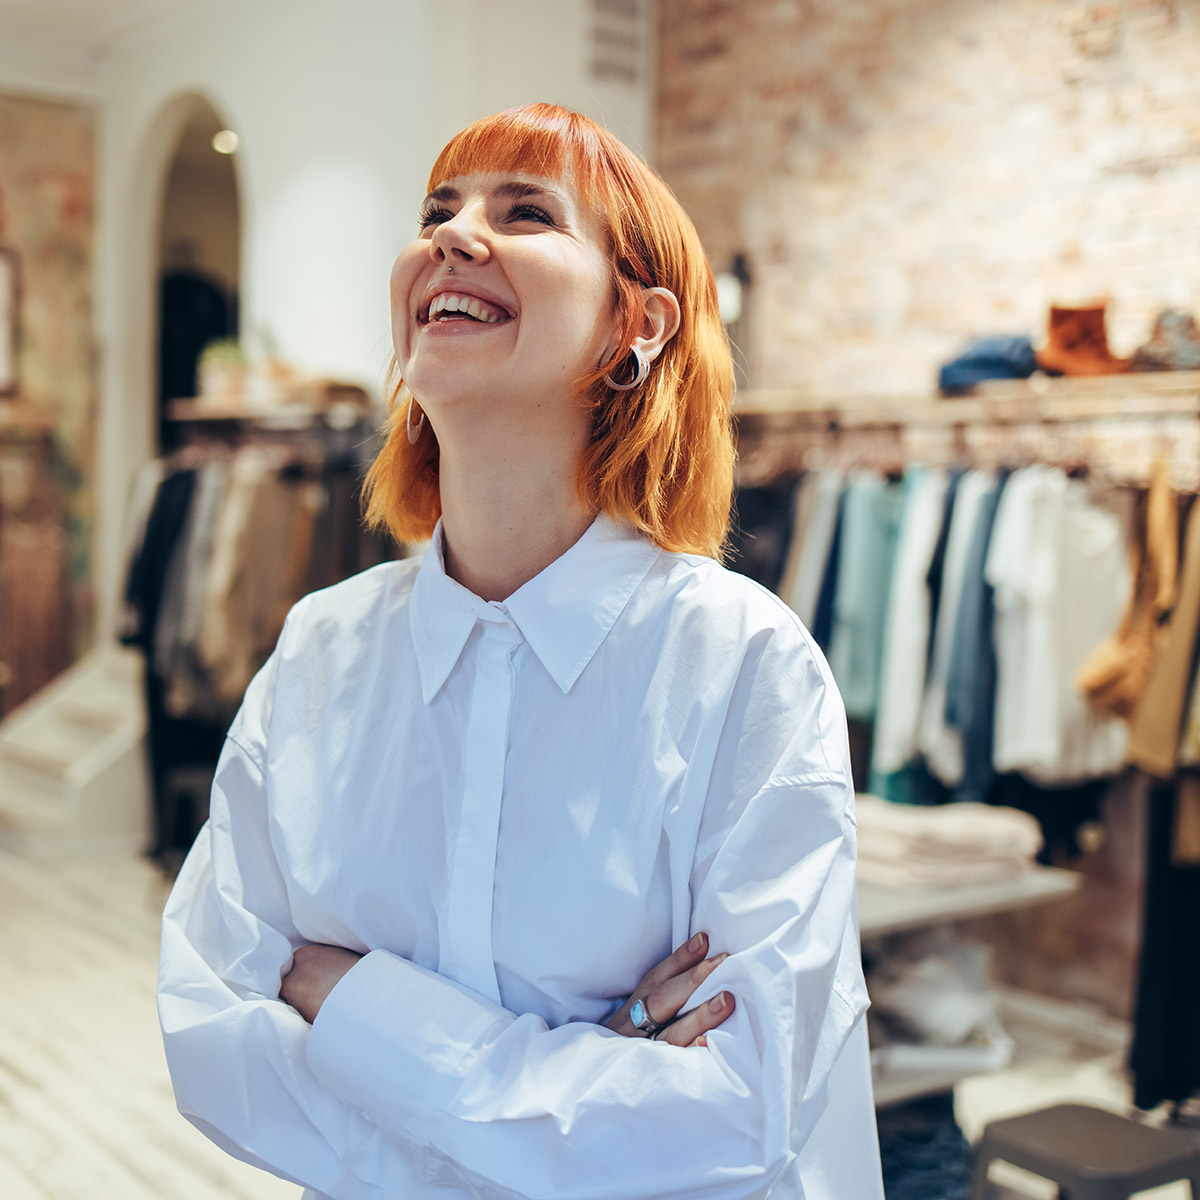                         Frau steht in einem Kleidungsgeschäft, blickt nach oben und lächelt